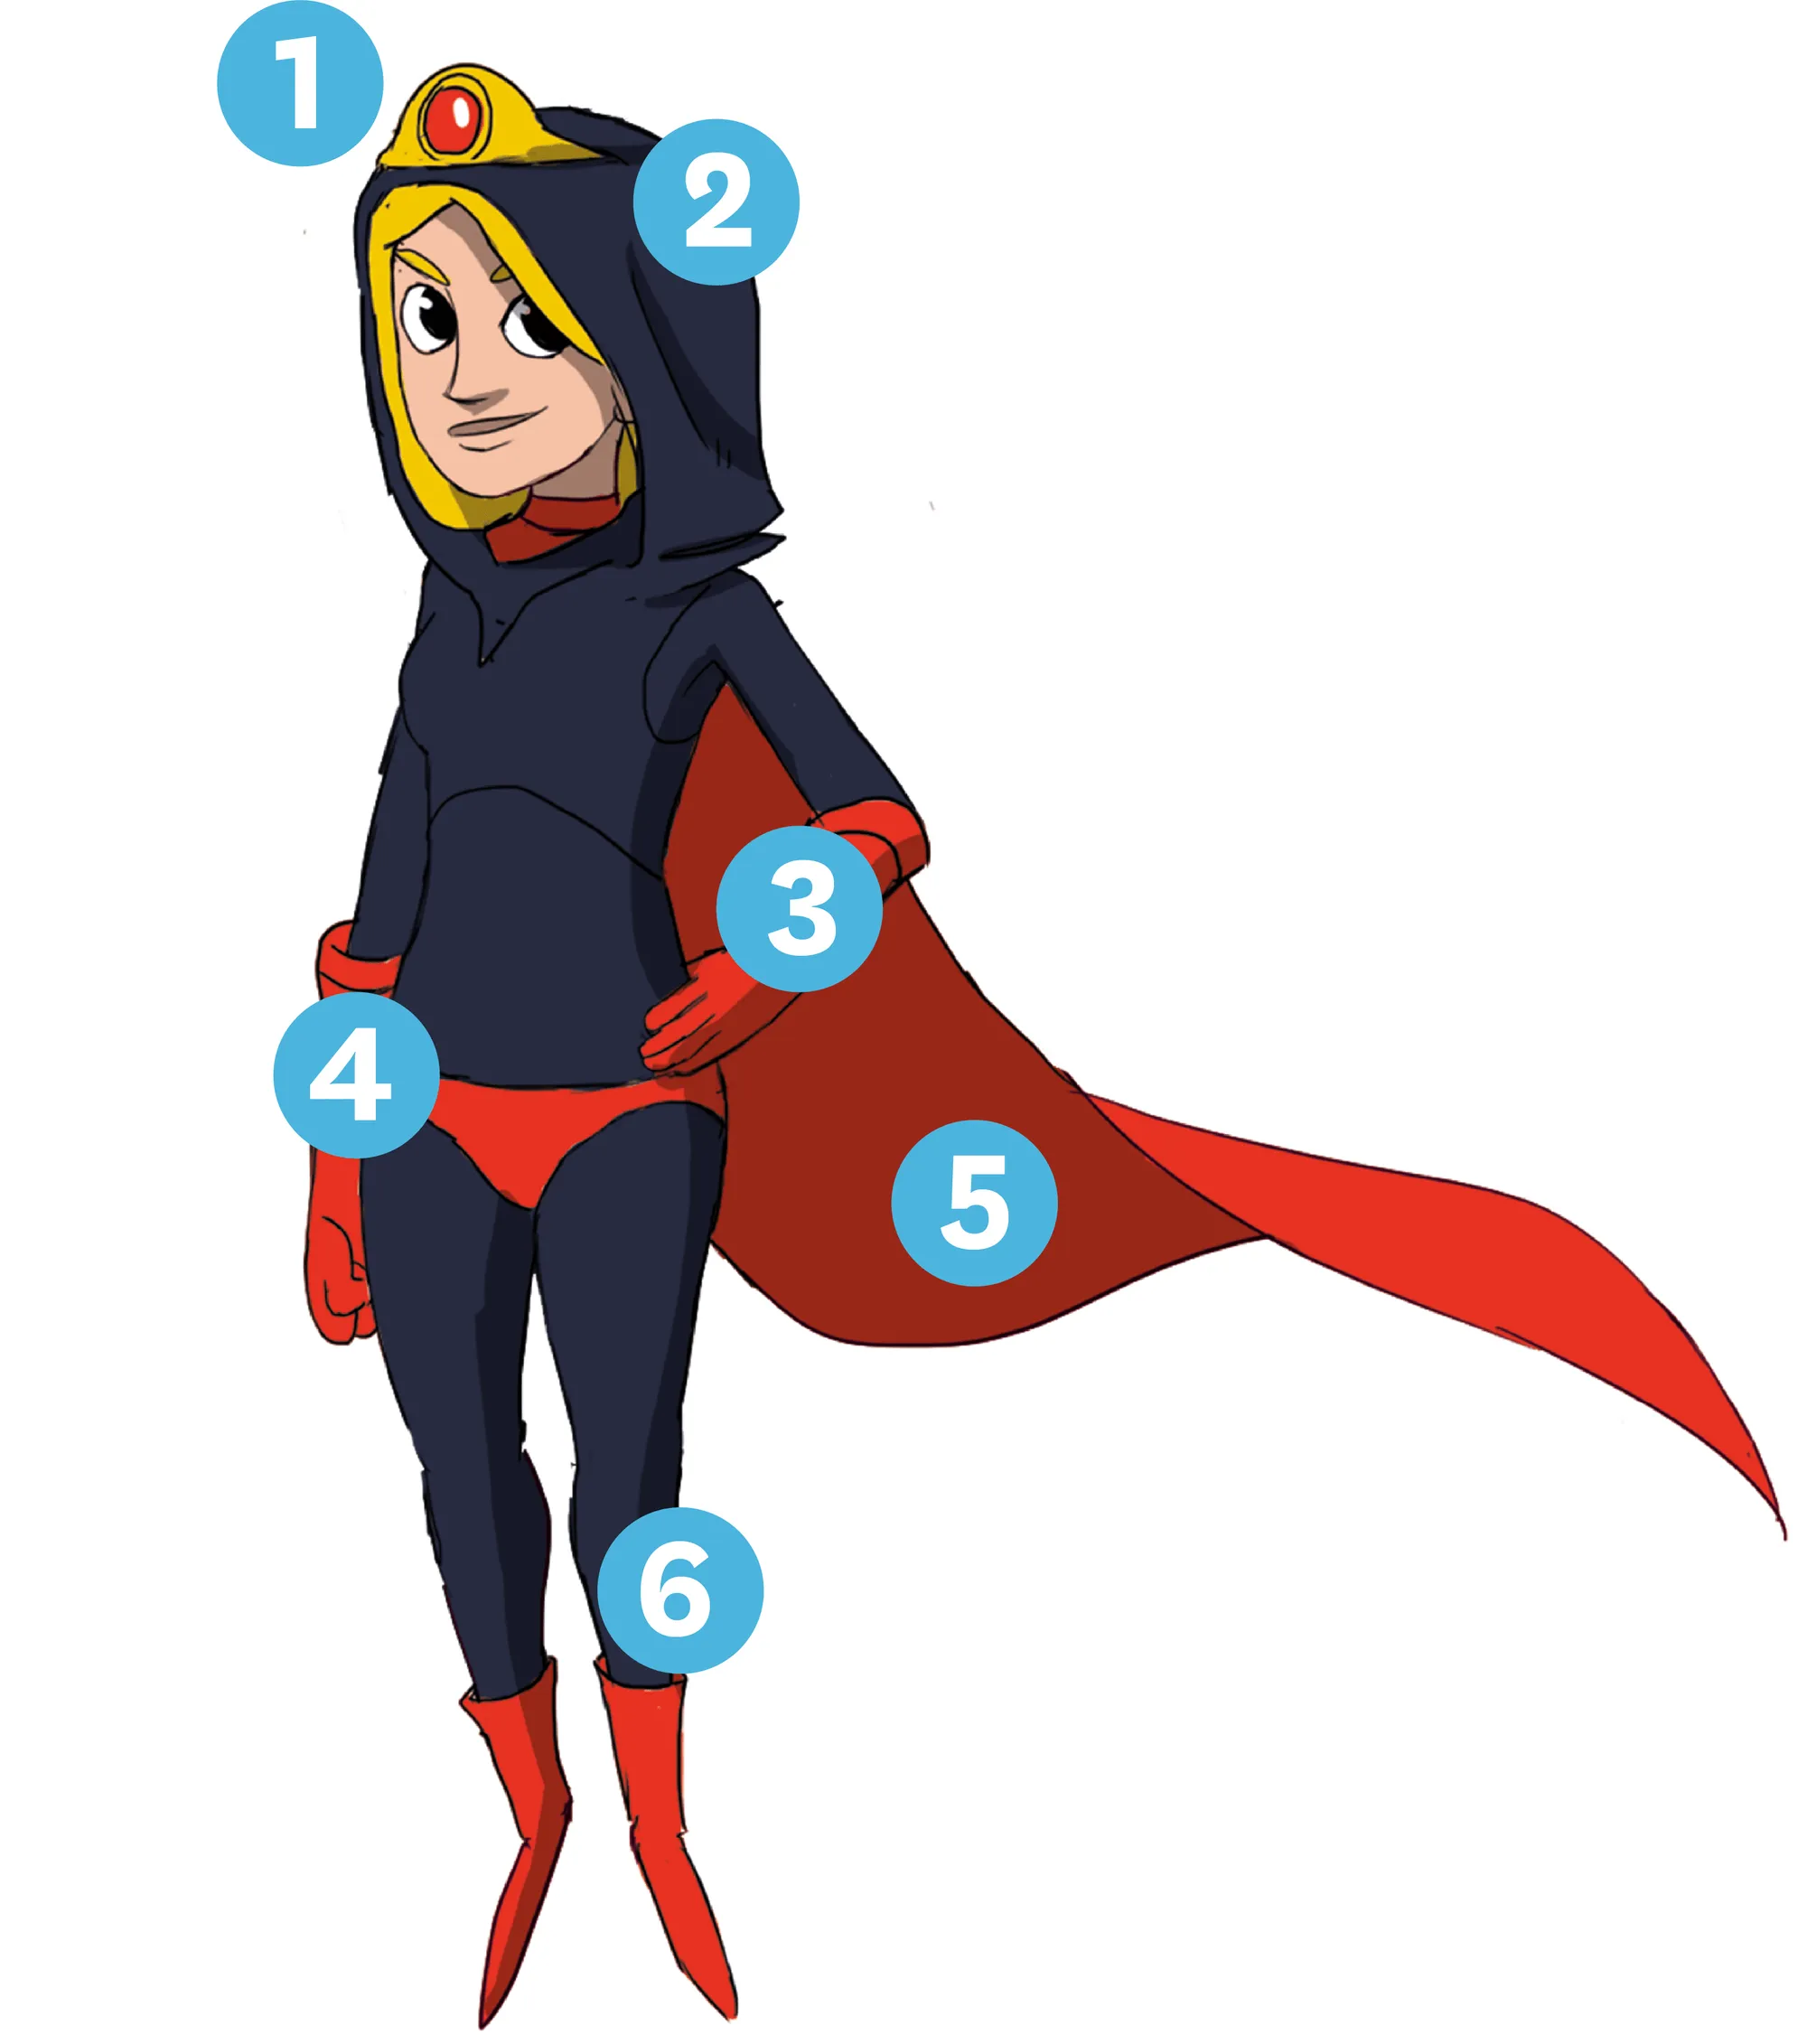 Dessin d'une super-héroïne dont le costume est composé d'une capuche, une tiare, une cape, des gants et d'un slip par dessus le costume